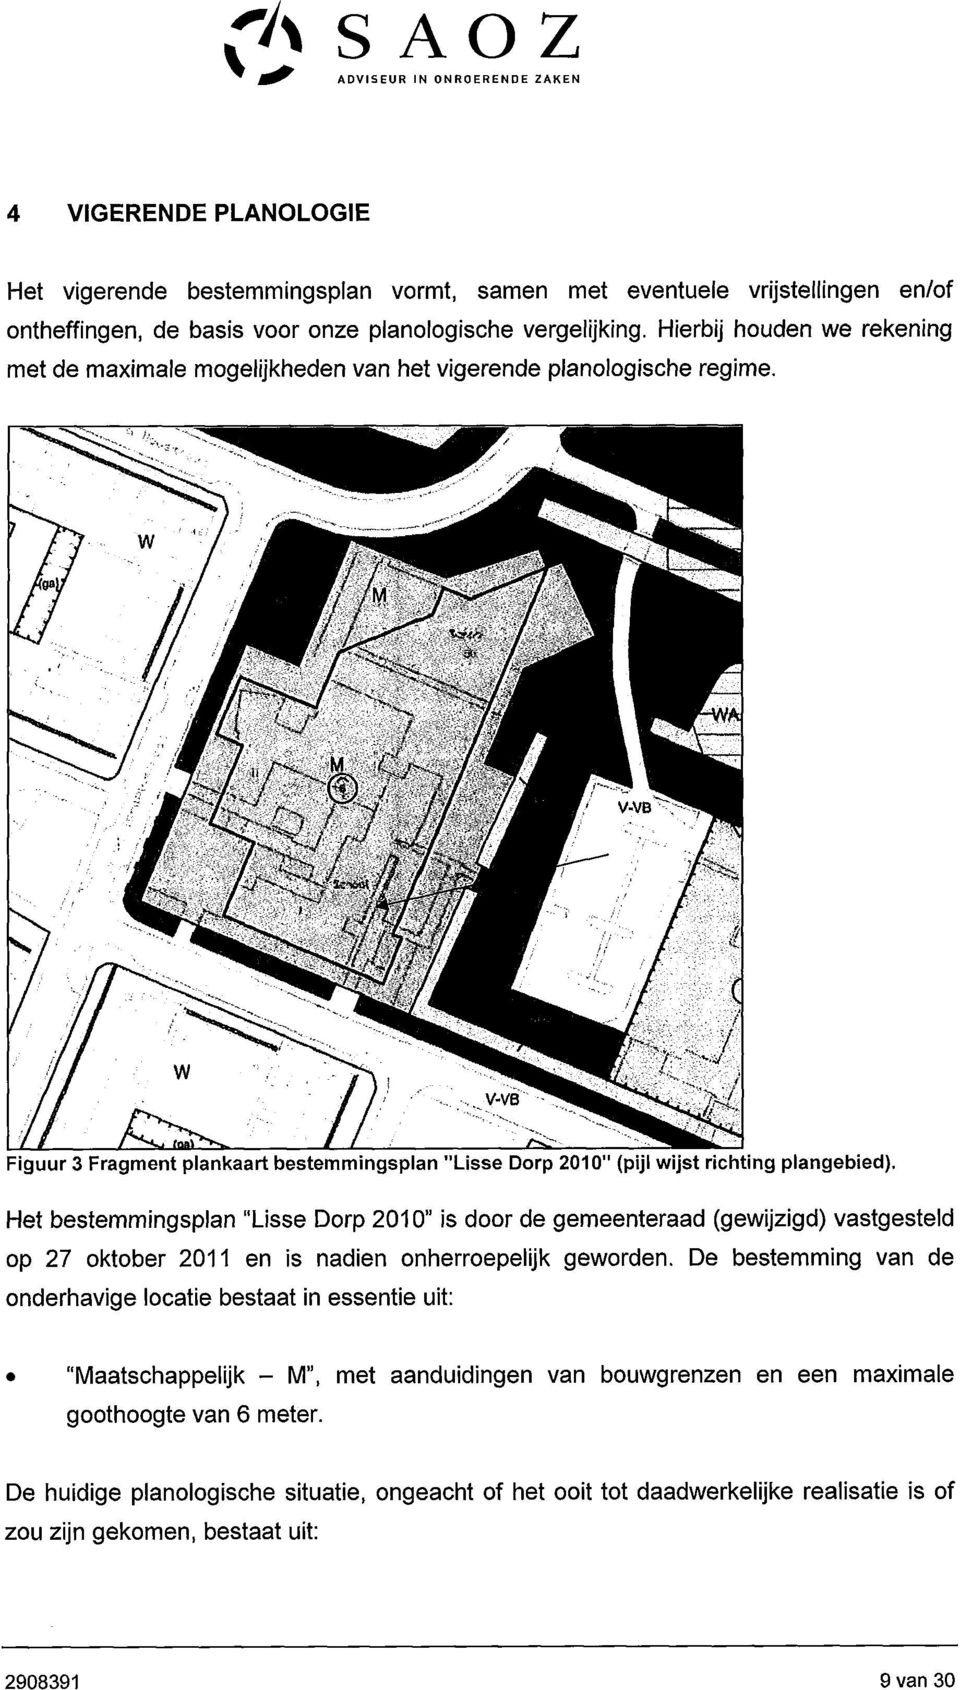 Het bestemmingsplan "Lisse Dorp 2010" is door de gemeenteraad (gewijzigd) vastgesteld op 27 oktober 2011 en is nadien onherroepelijk geworden.